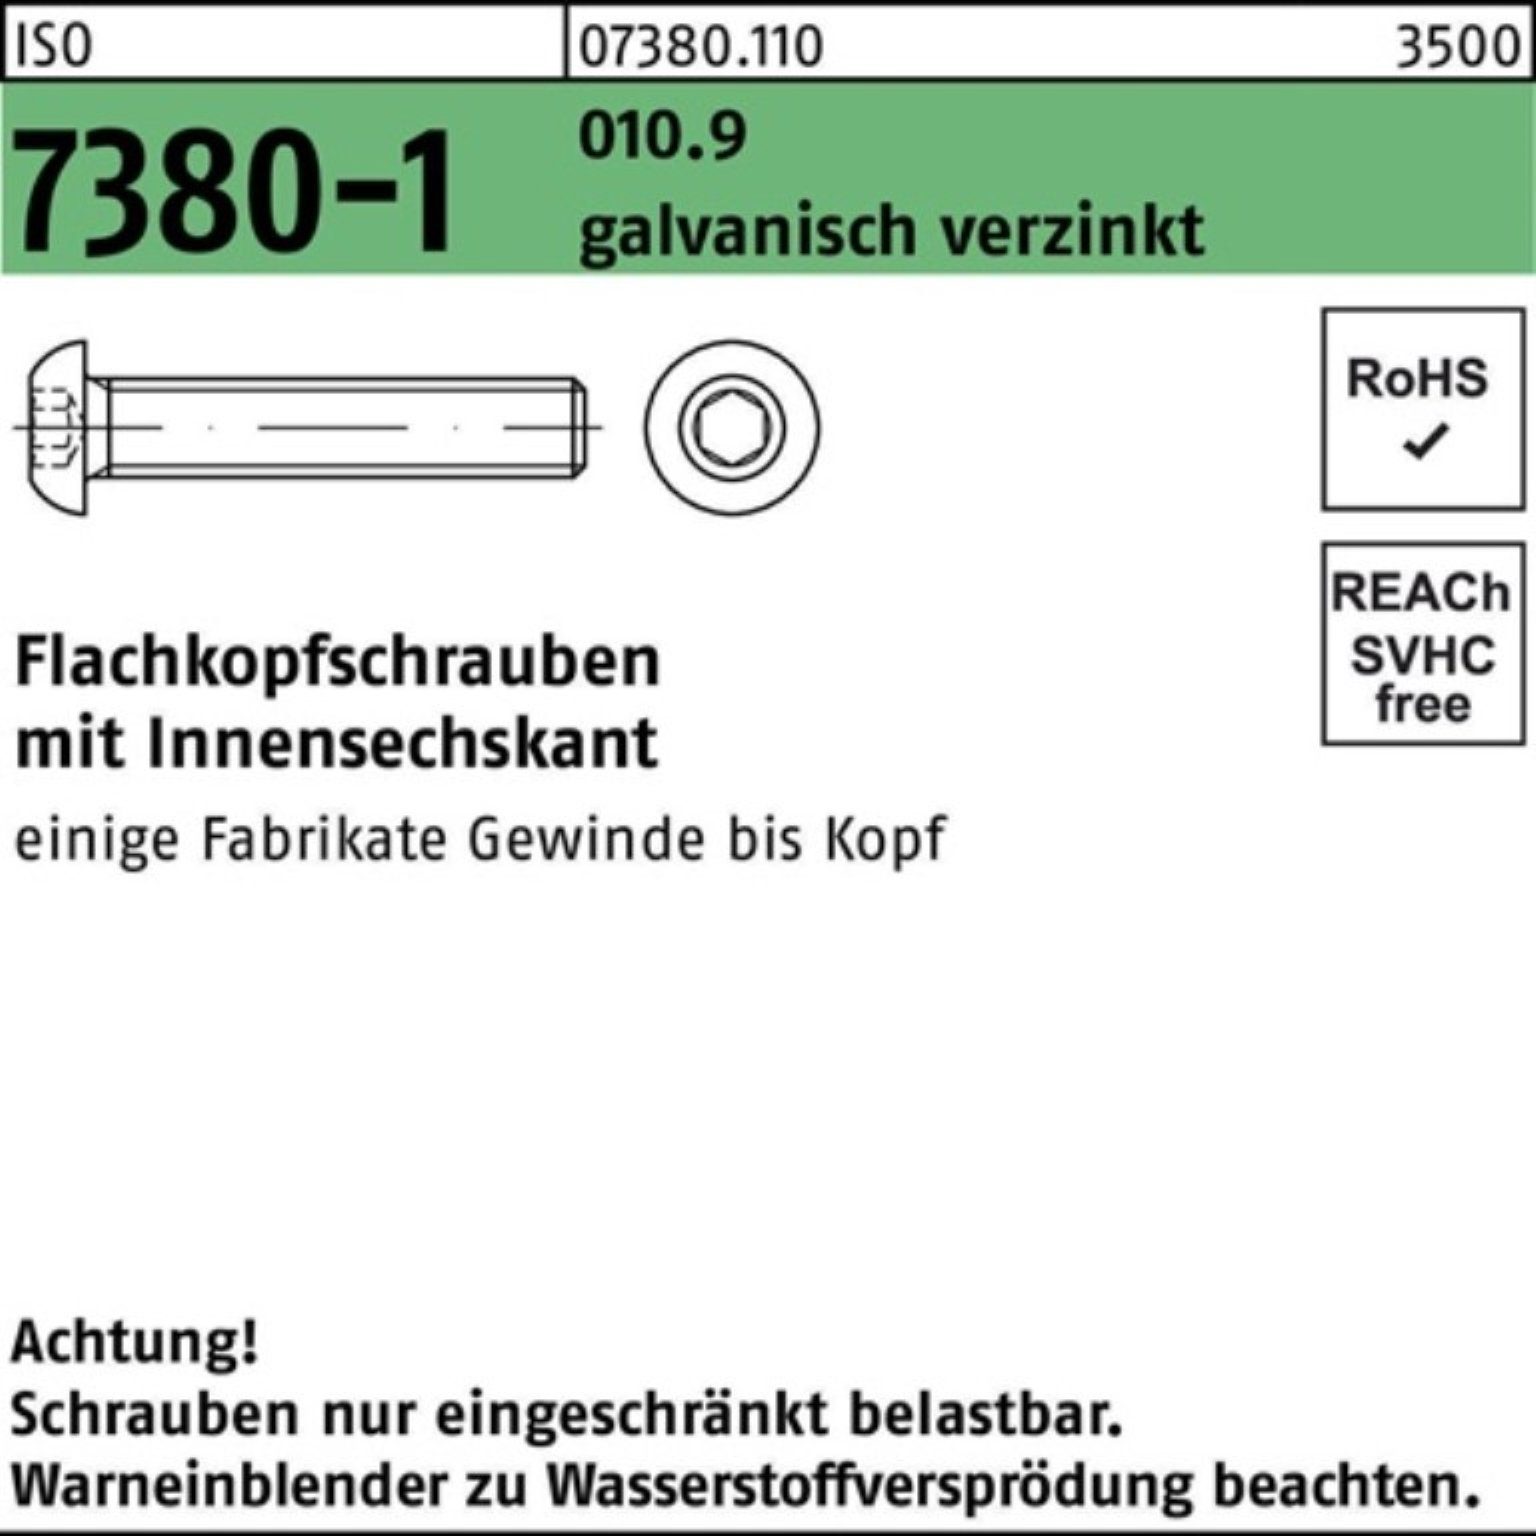 ISO Reyher 010.9 Flachkopfschraube Innen-6kt Schraube galv.ver Pack 7380-1 M6x30 500er